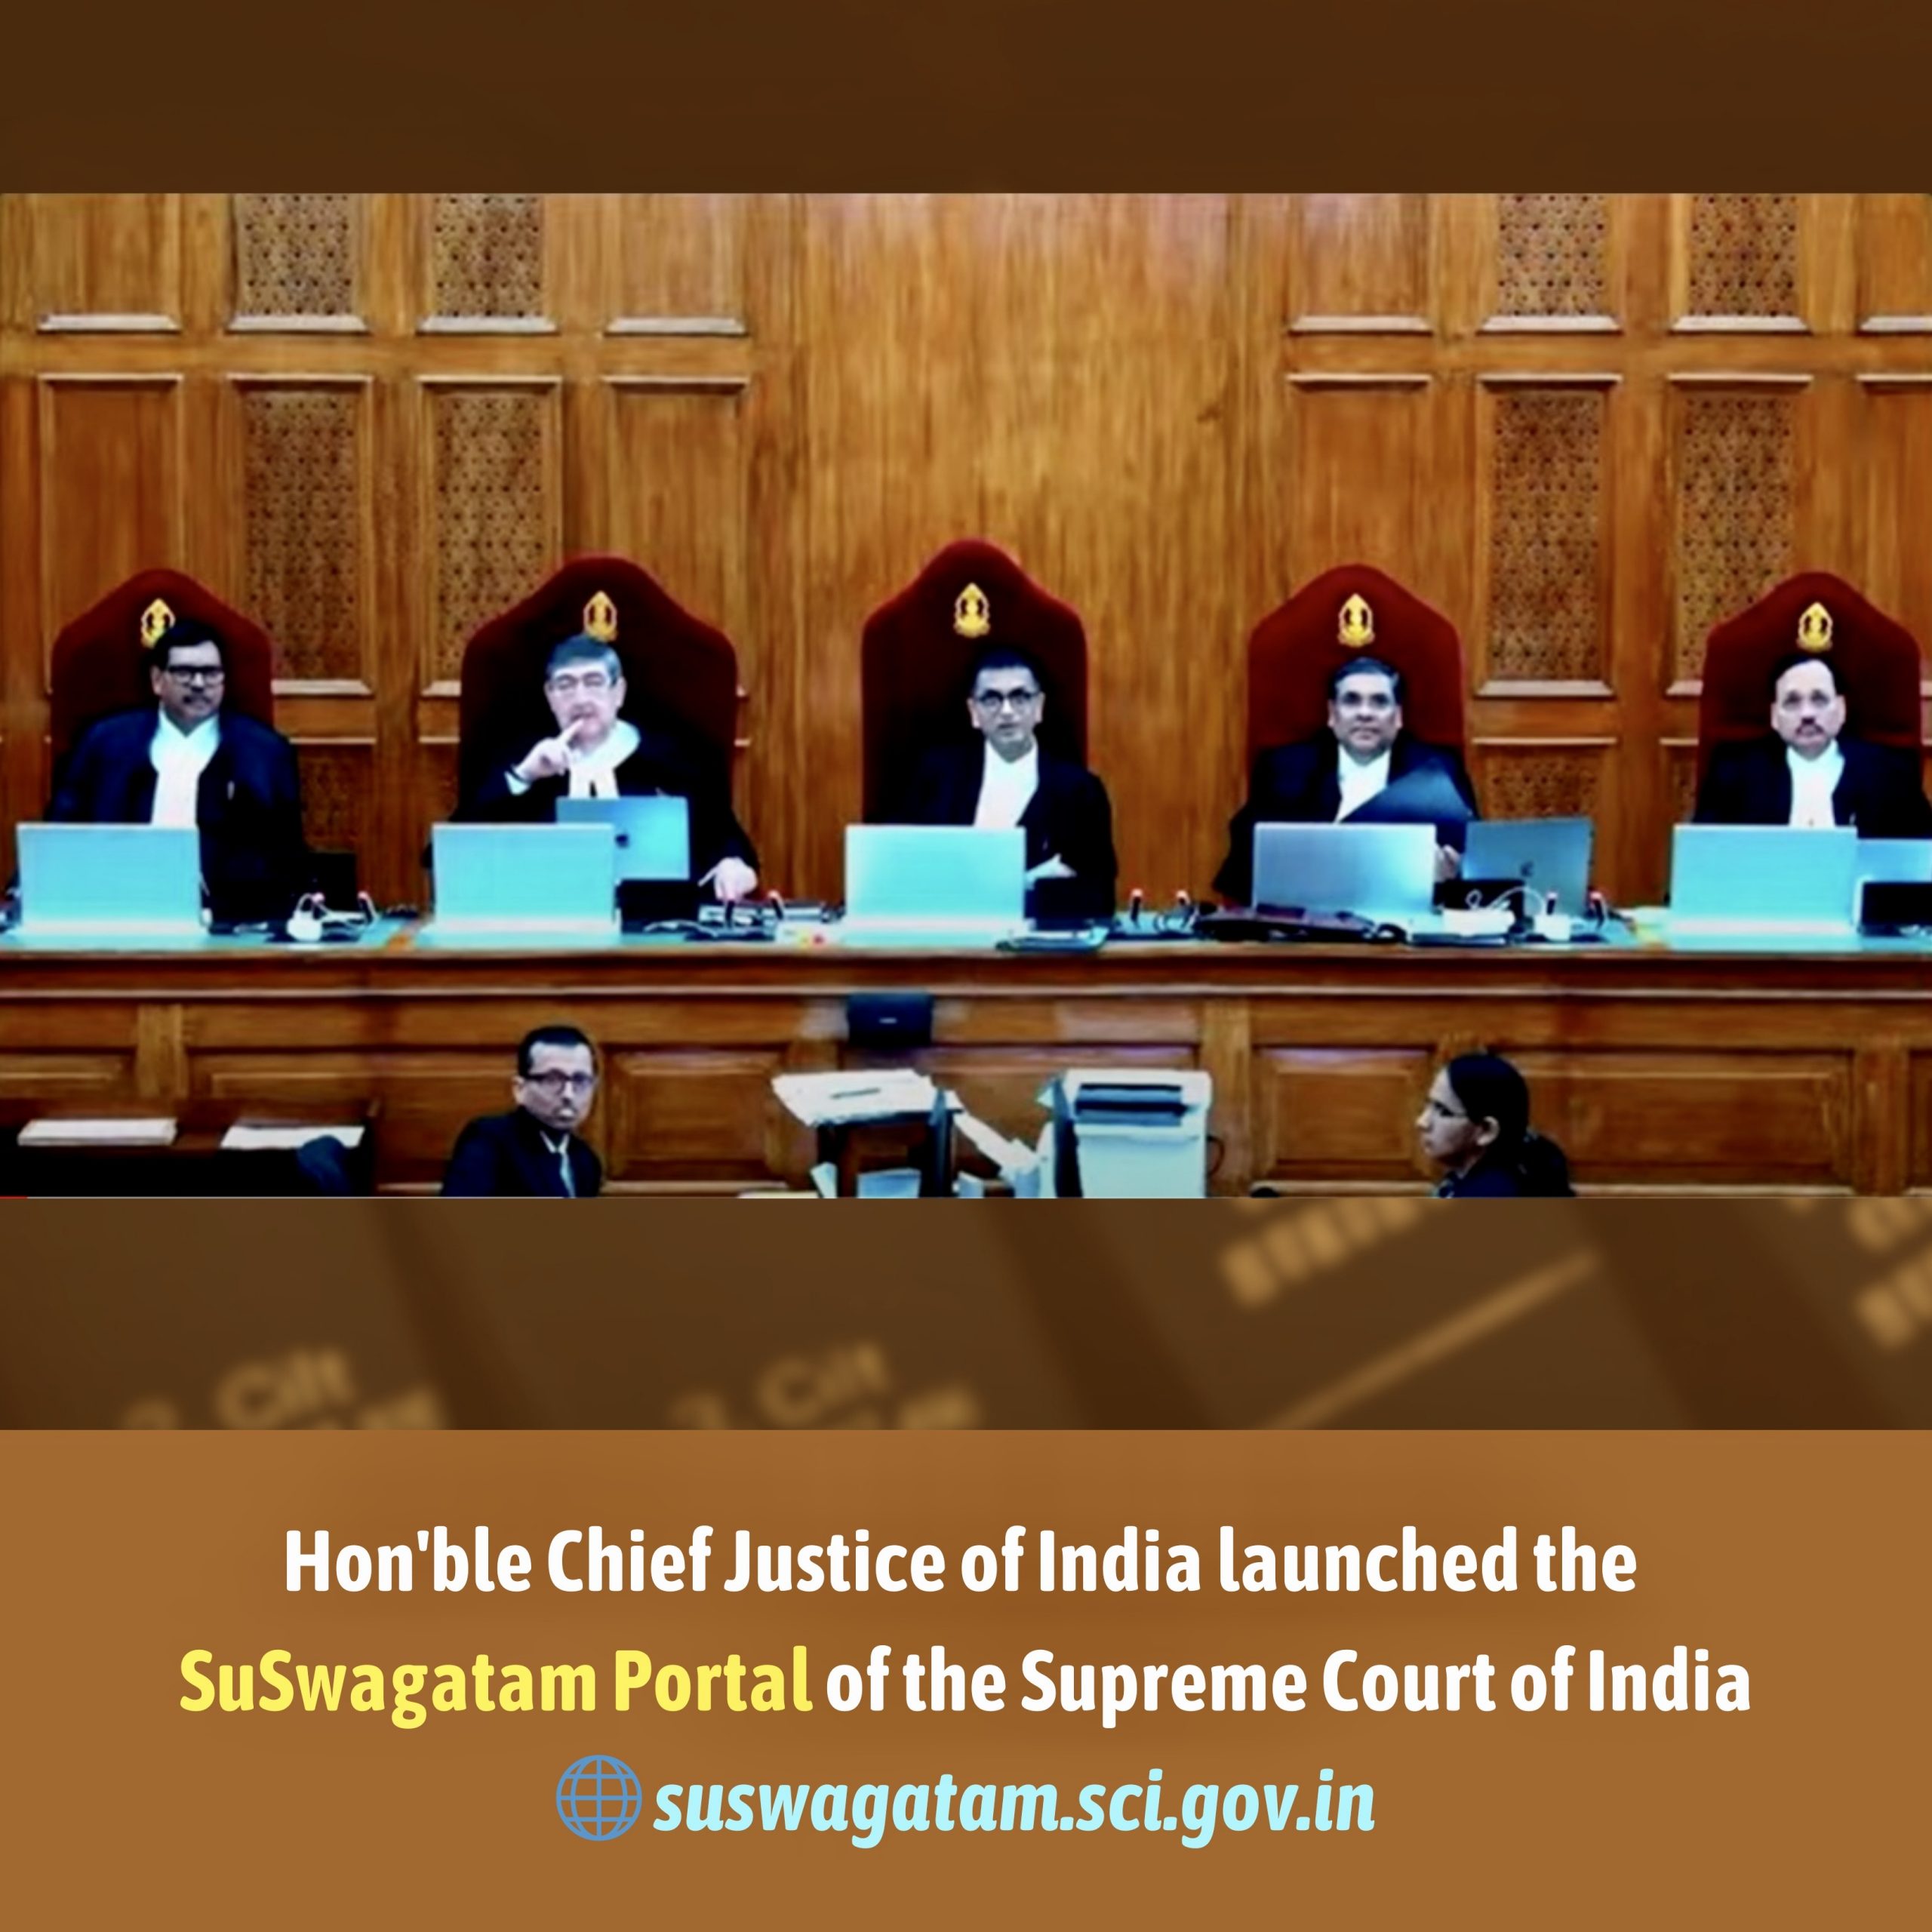 Image of भारत के माननीय मुख्य न्यायाधीश ने भारत के सुपरमी कोर्ट का सुस्वागतम पोर्टल लॉन्च किया